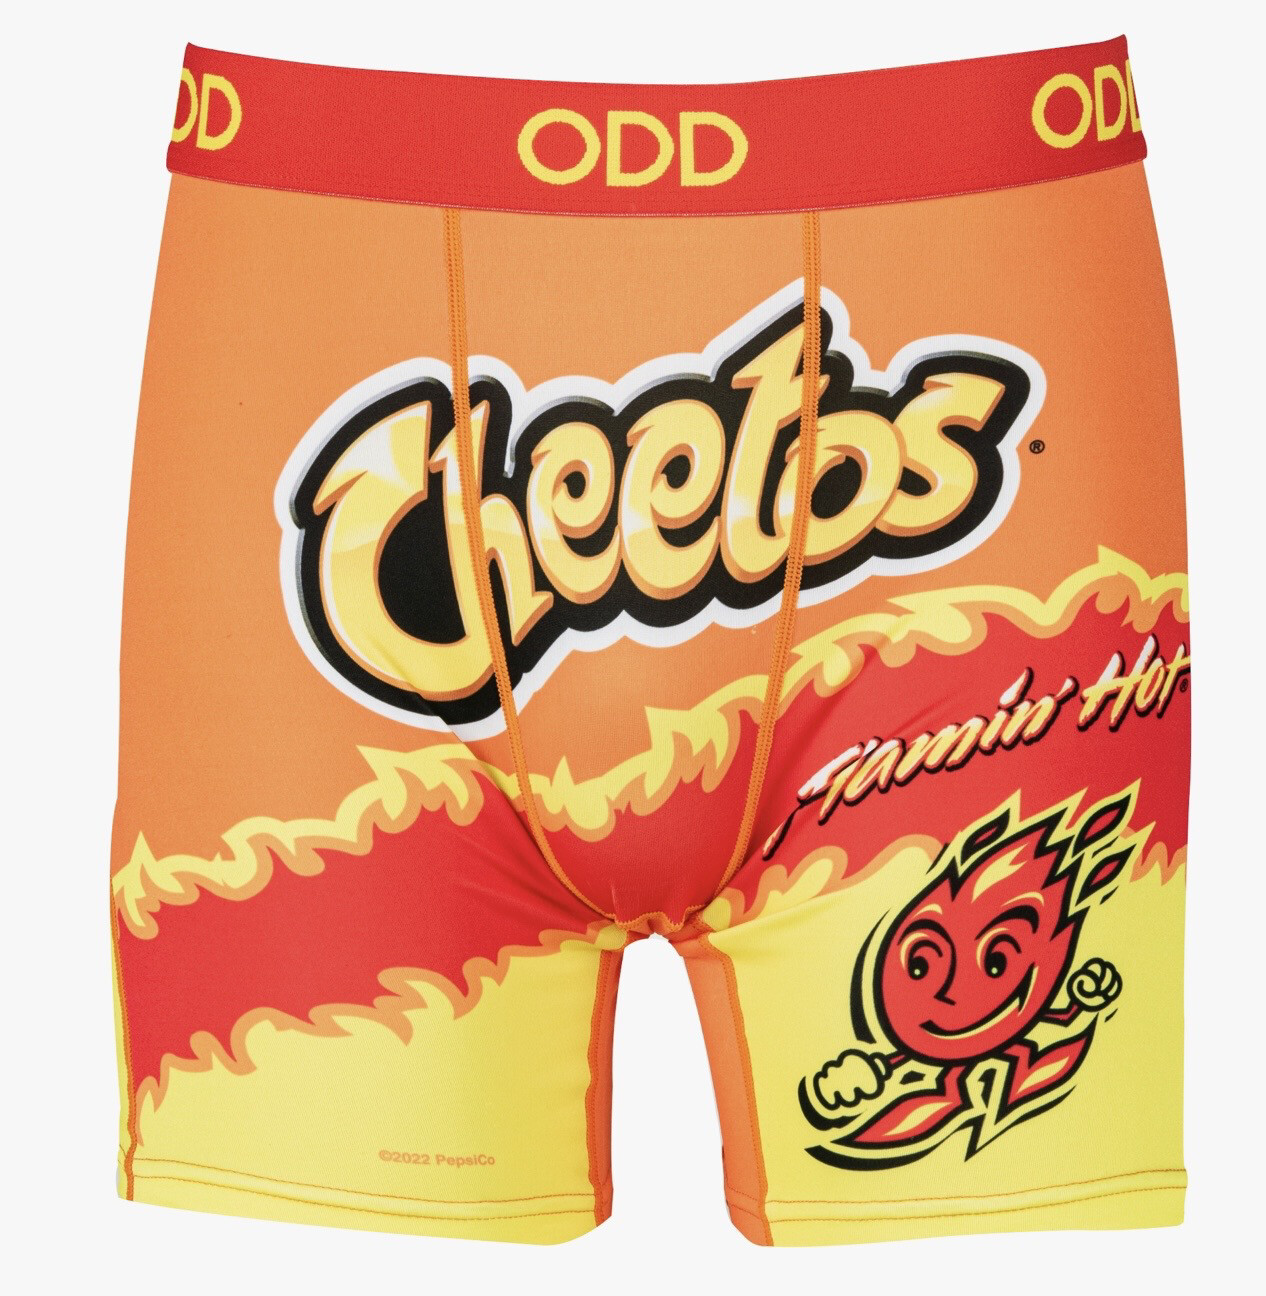 Odd Boxer Cheetos Md